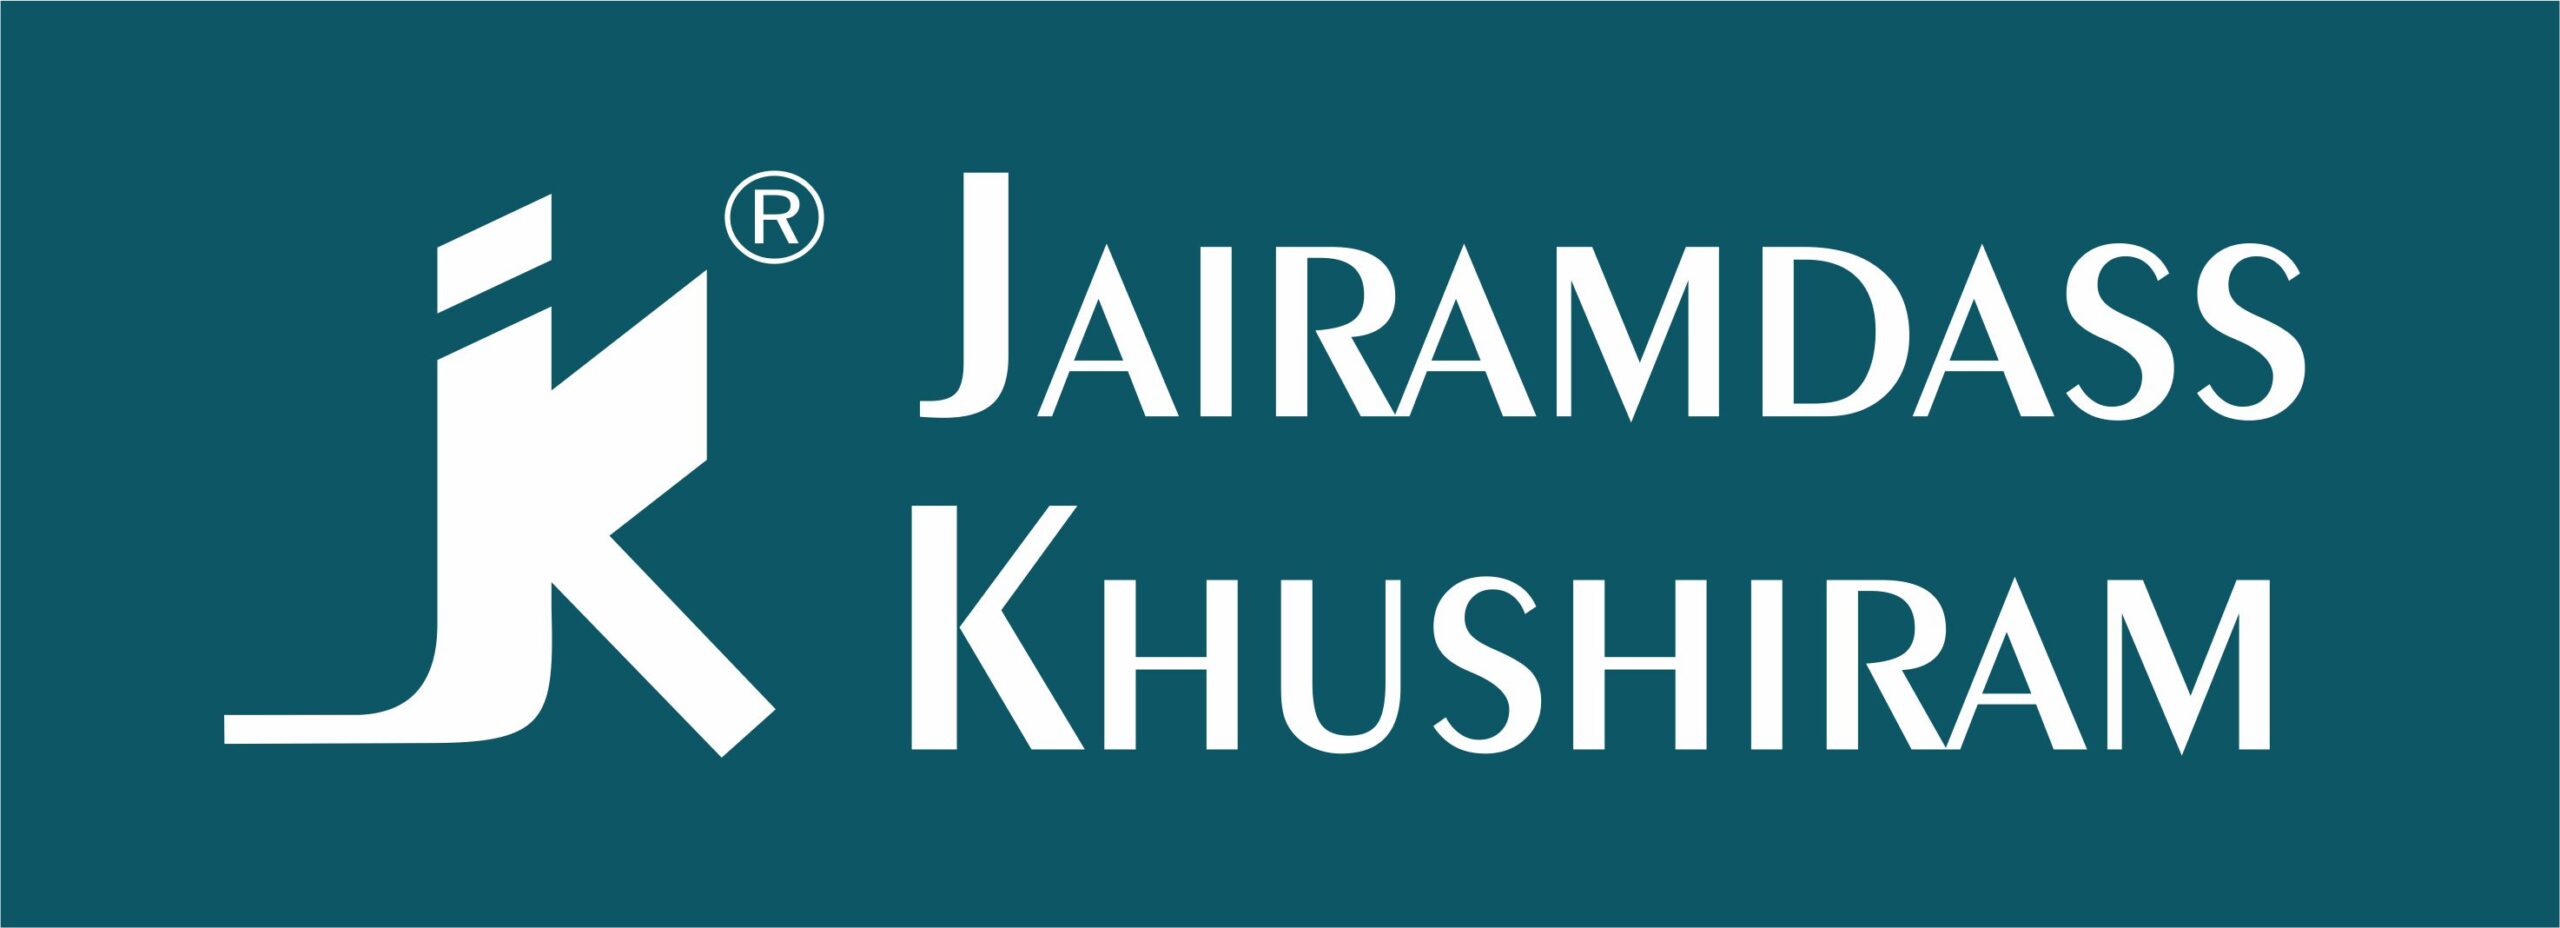 Jairamdass Khushiram